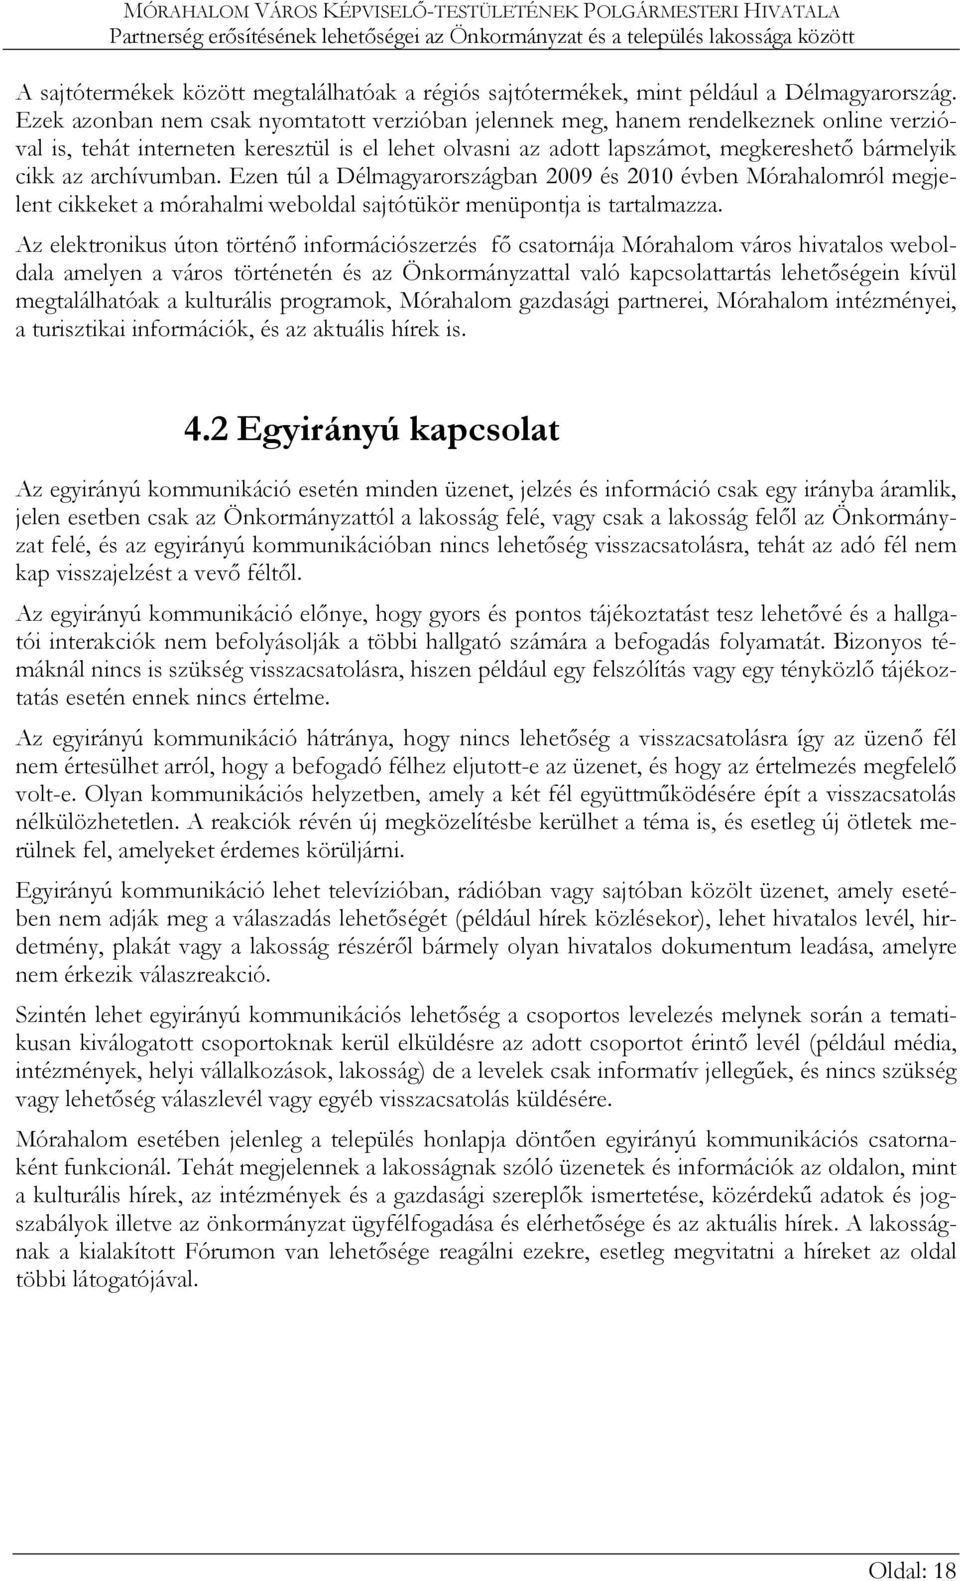 archívumban. Ezen túl a Délmagyarországban 2009 és 2010 évben Mórahalomról megjelent cikkeket a mórahalmi weboldal sajtótükör menüpontja is tartalmazza.